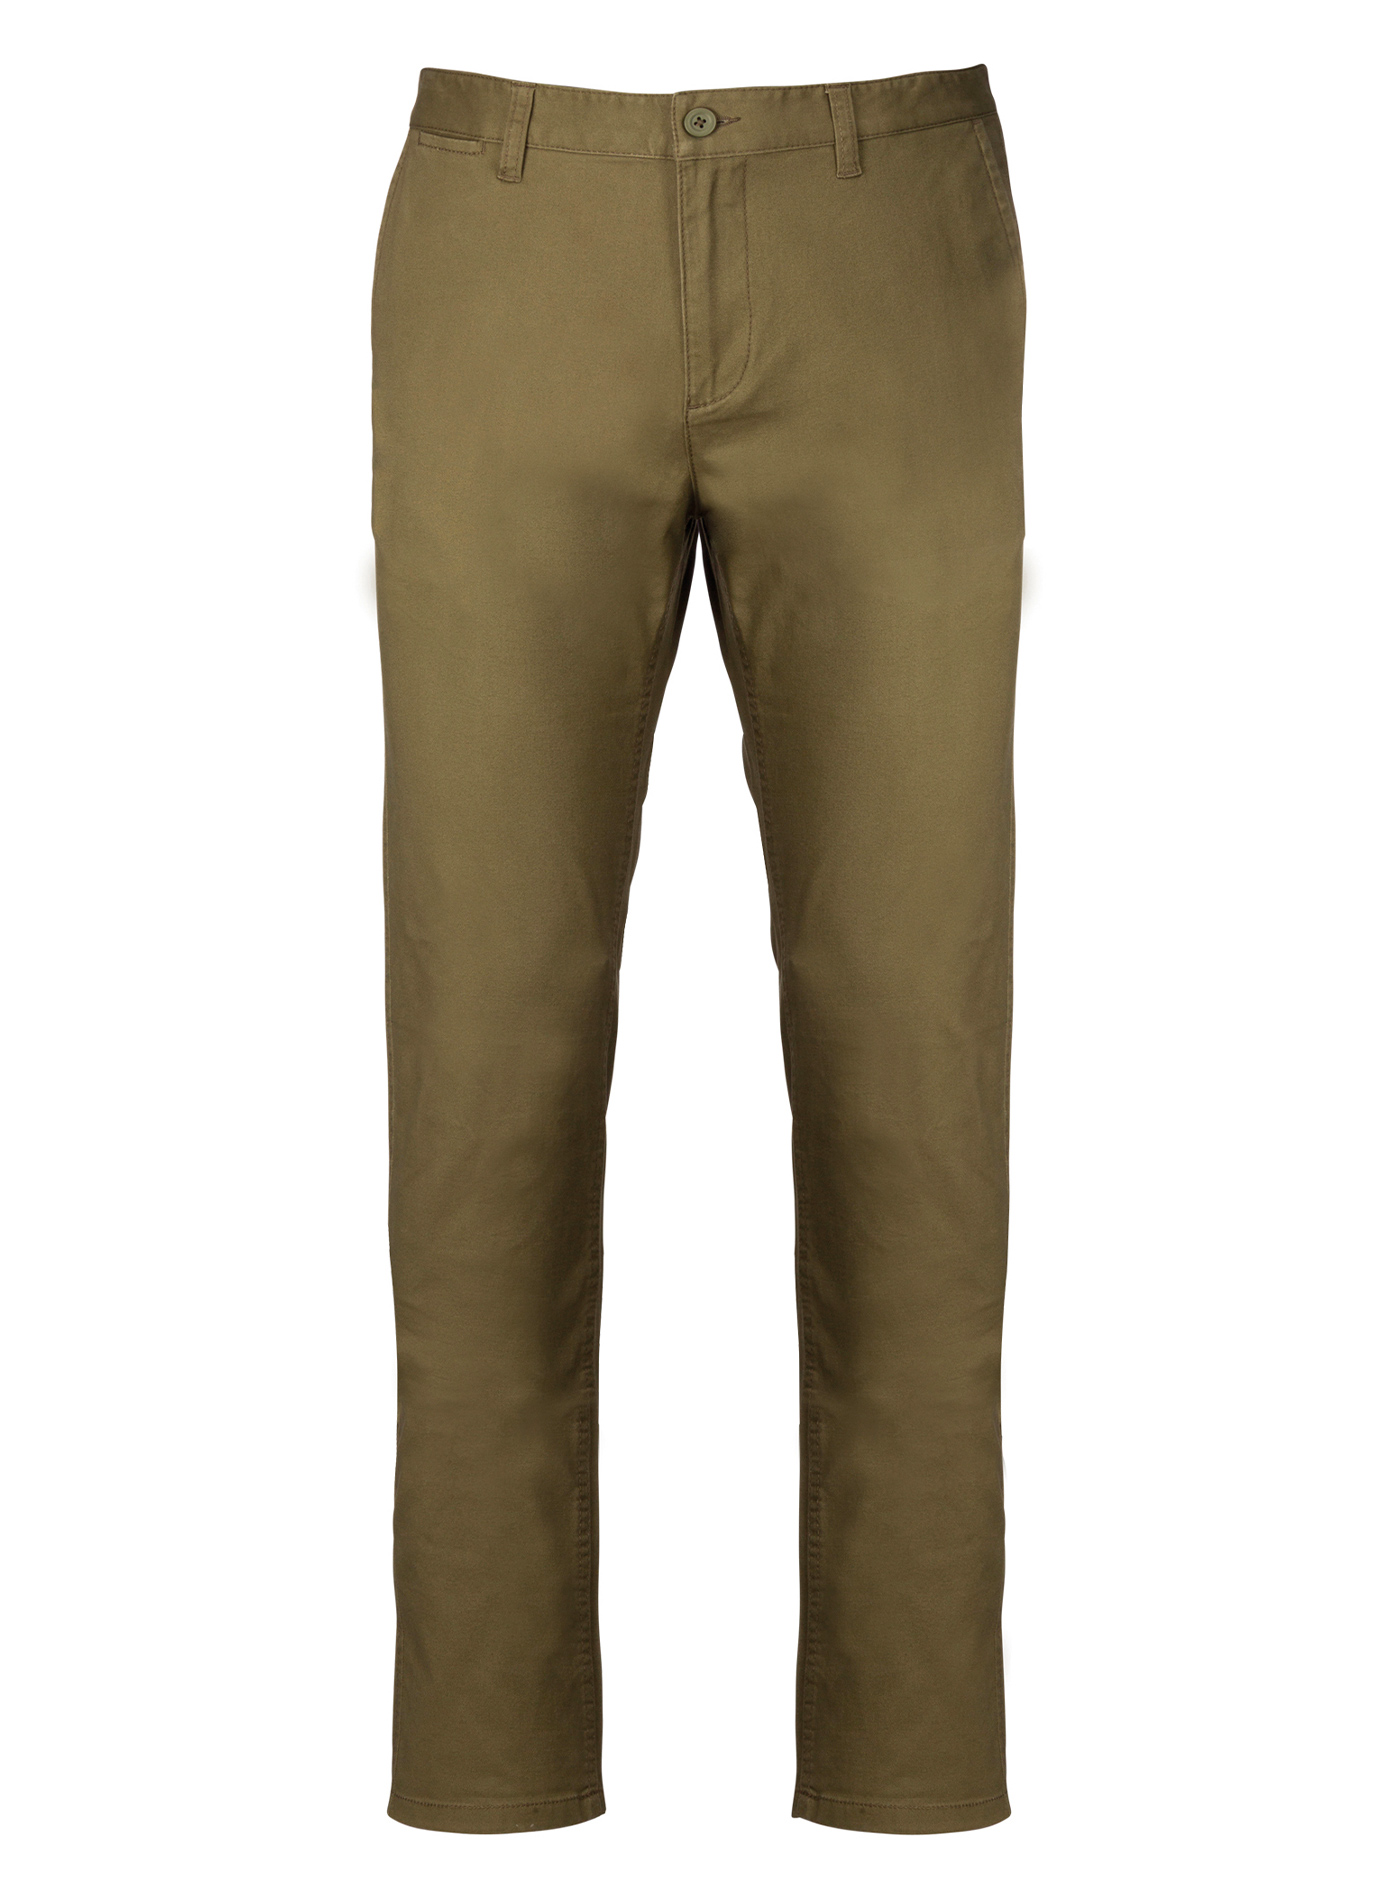 Pánské pohodlné kalhoty Kariban Chino - Khaki 52